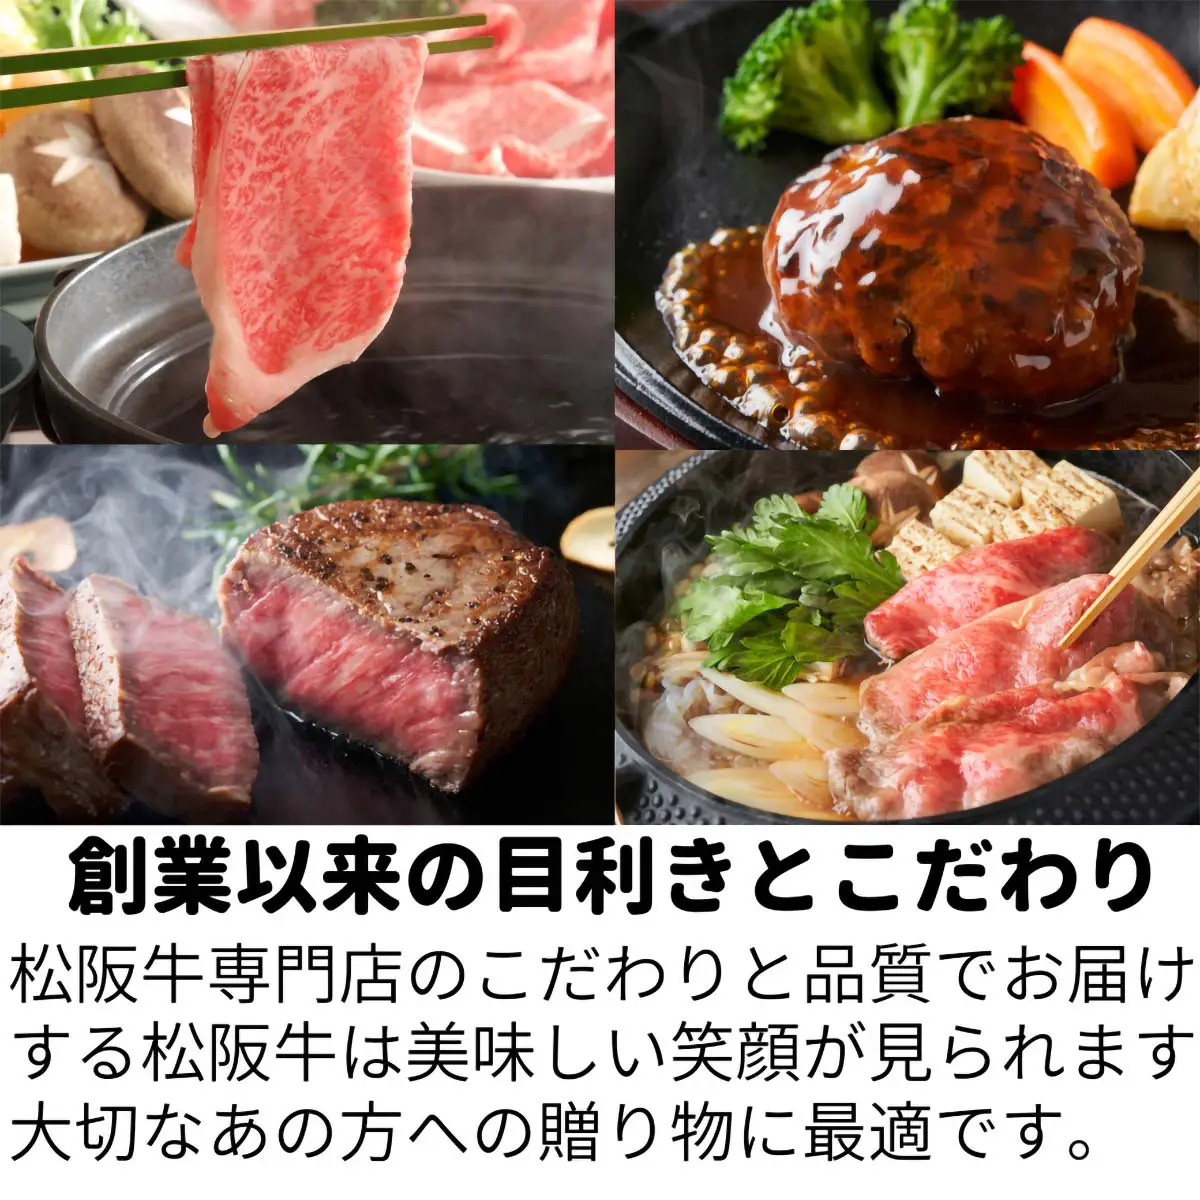 【結婚祝い】松阪牛お肉のギフト券Cタイプ